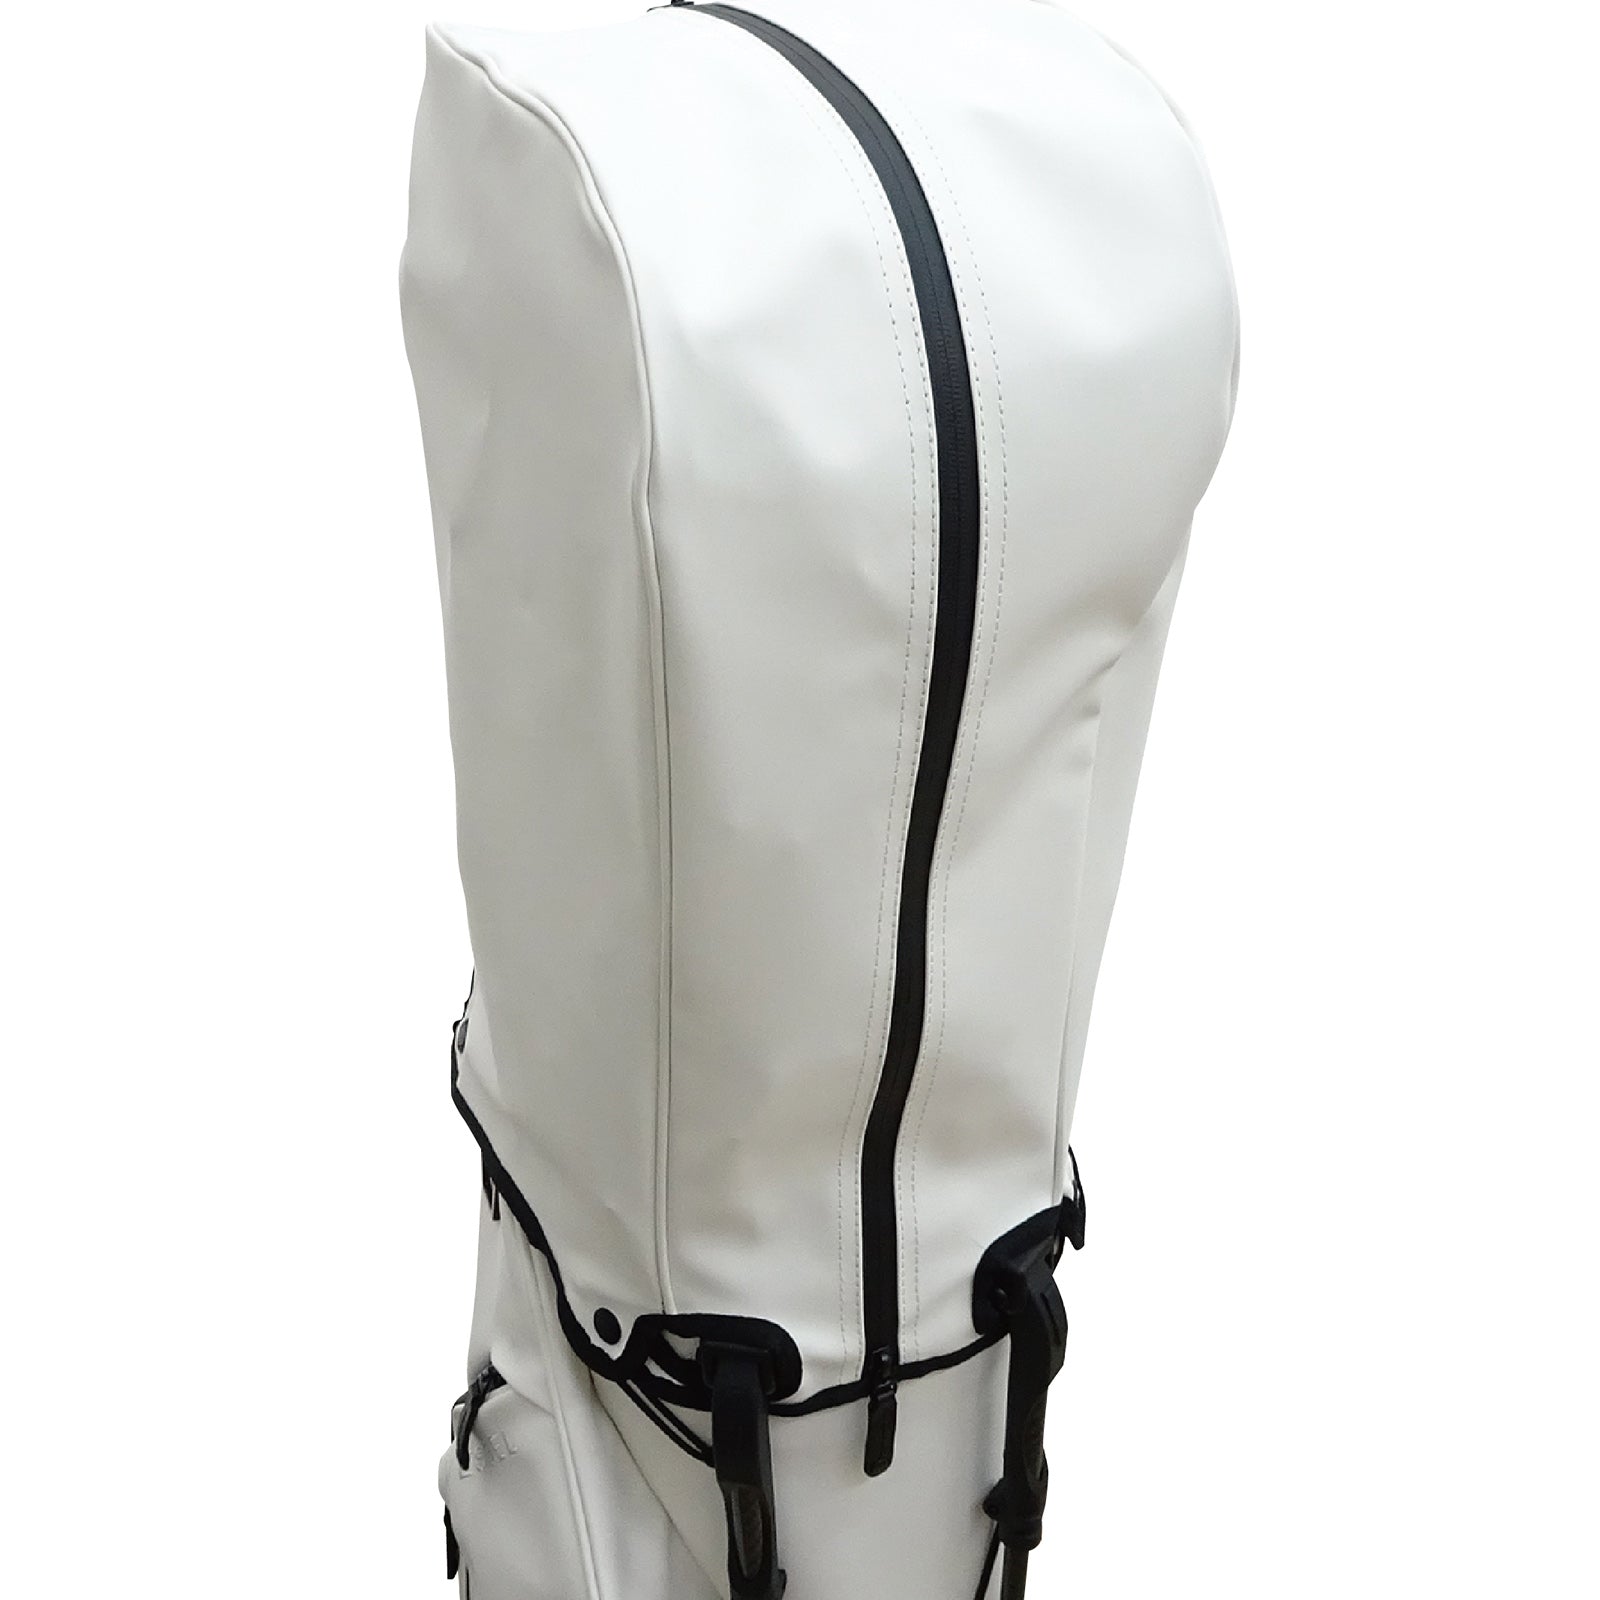 Protoconcept Golf bag, golf stand bag, vessel golf bag